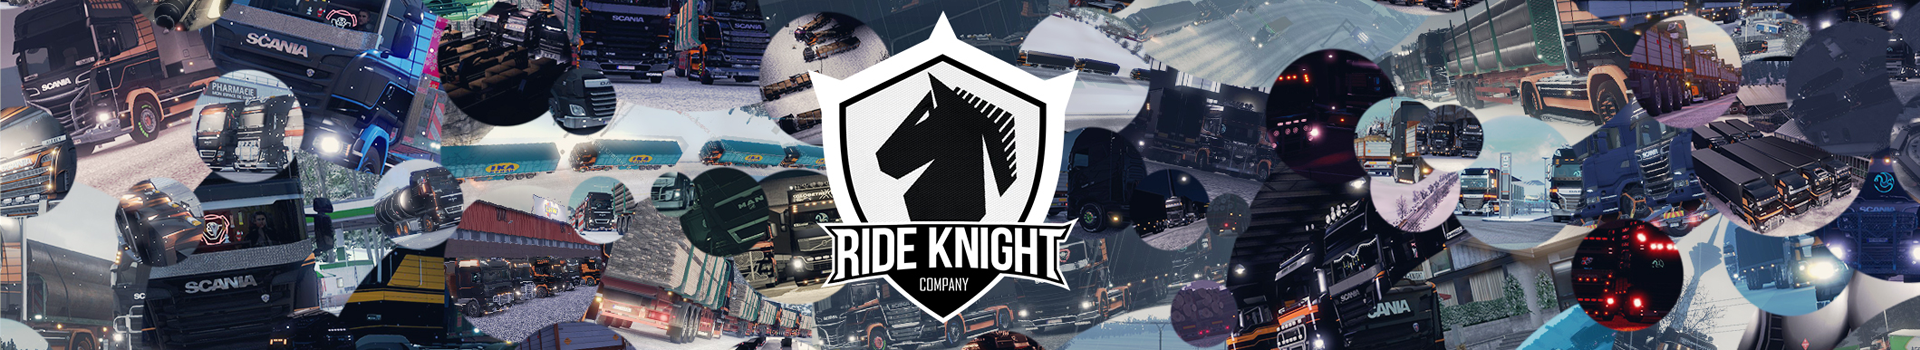 Ride Knight Company